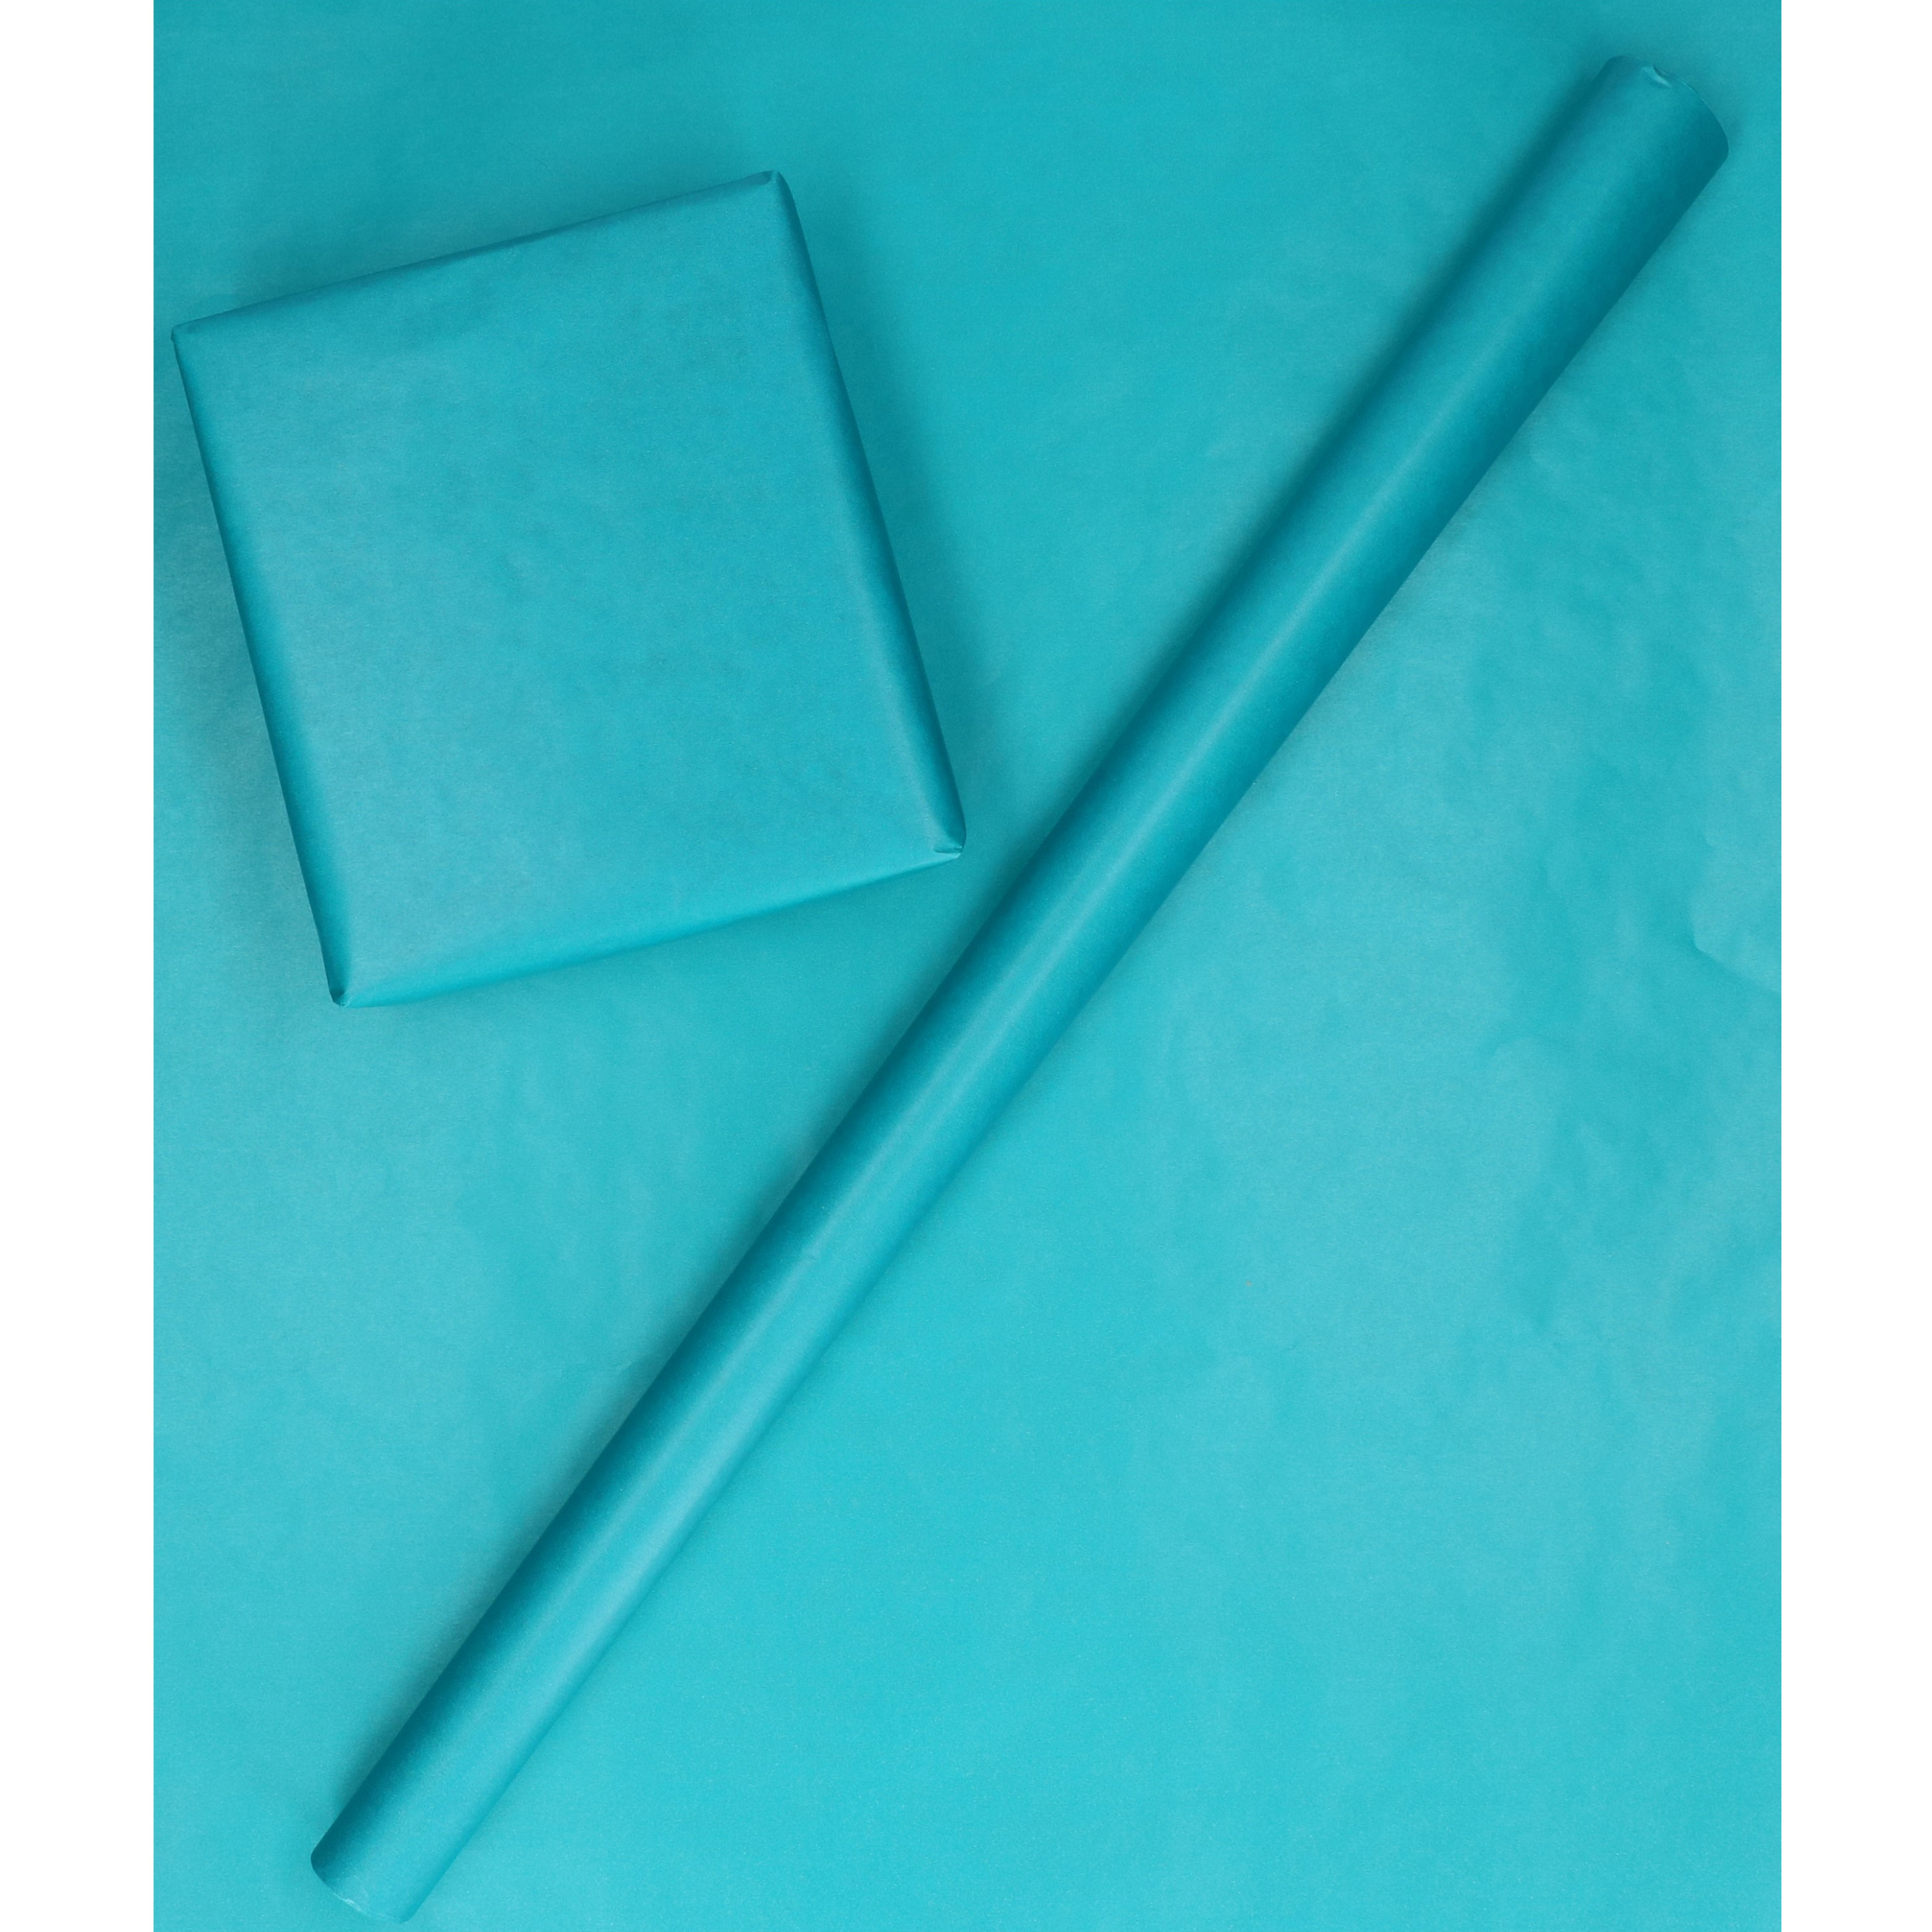 Inpakpapier/cadeaupapier dubbelzijdig oceaan blauw/turquoise 200 x 70 cm